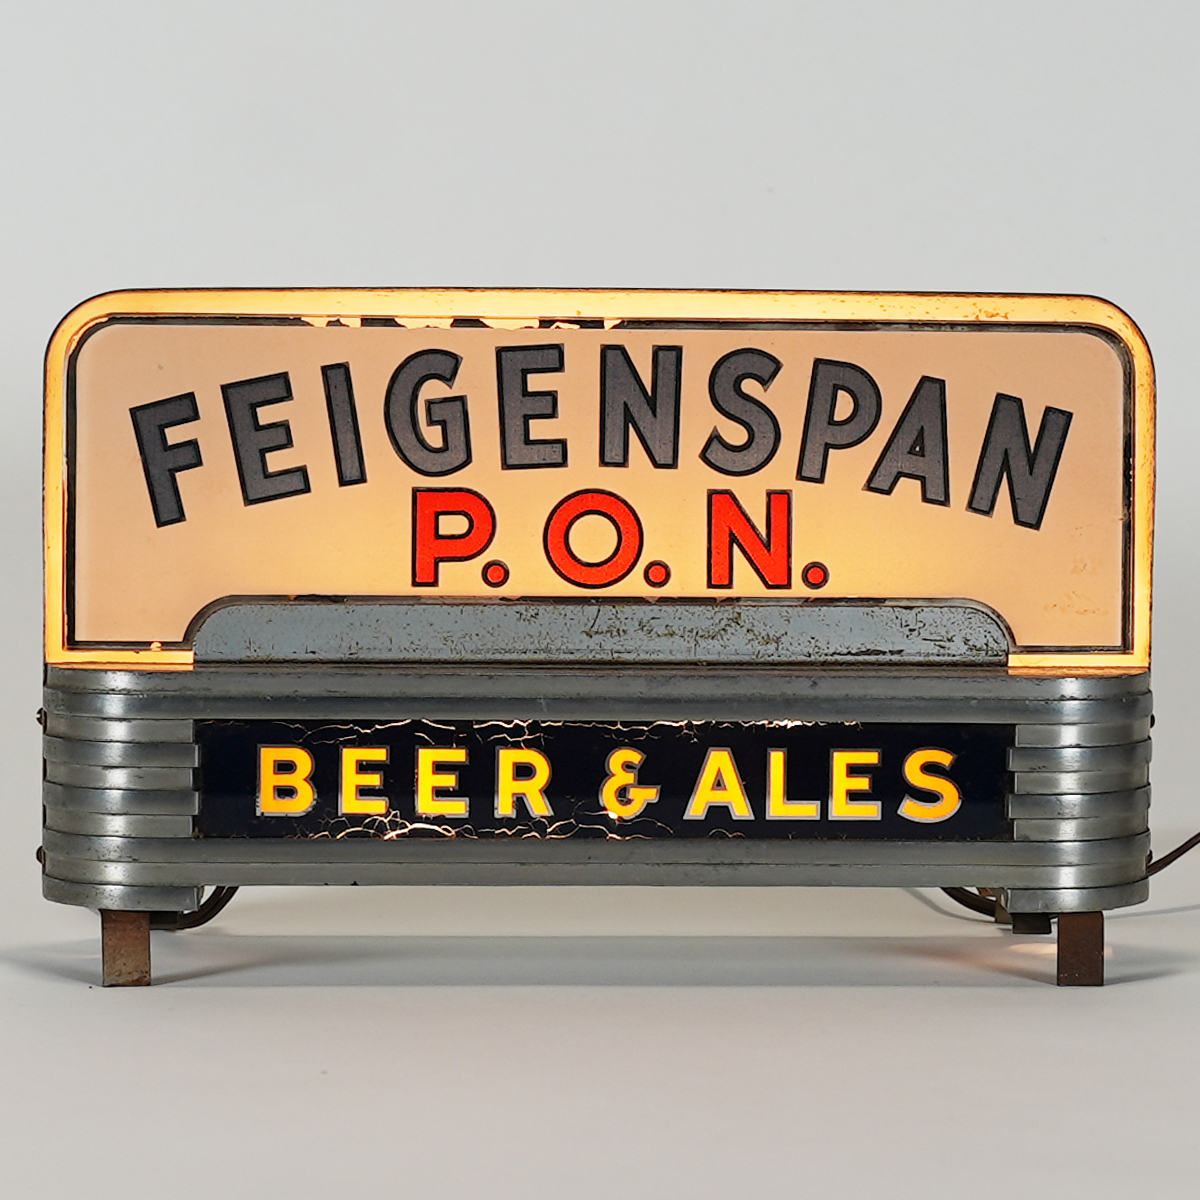 Feigenspan P.O.N. Beer Ales ROG Illuminated HALO Sign